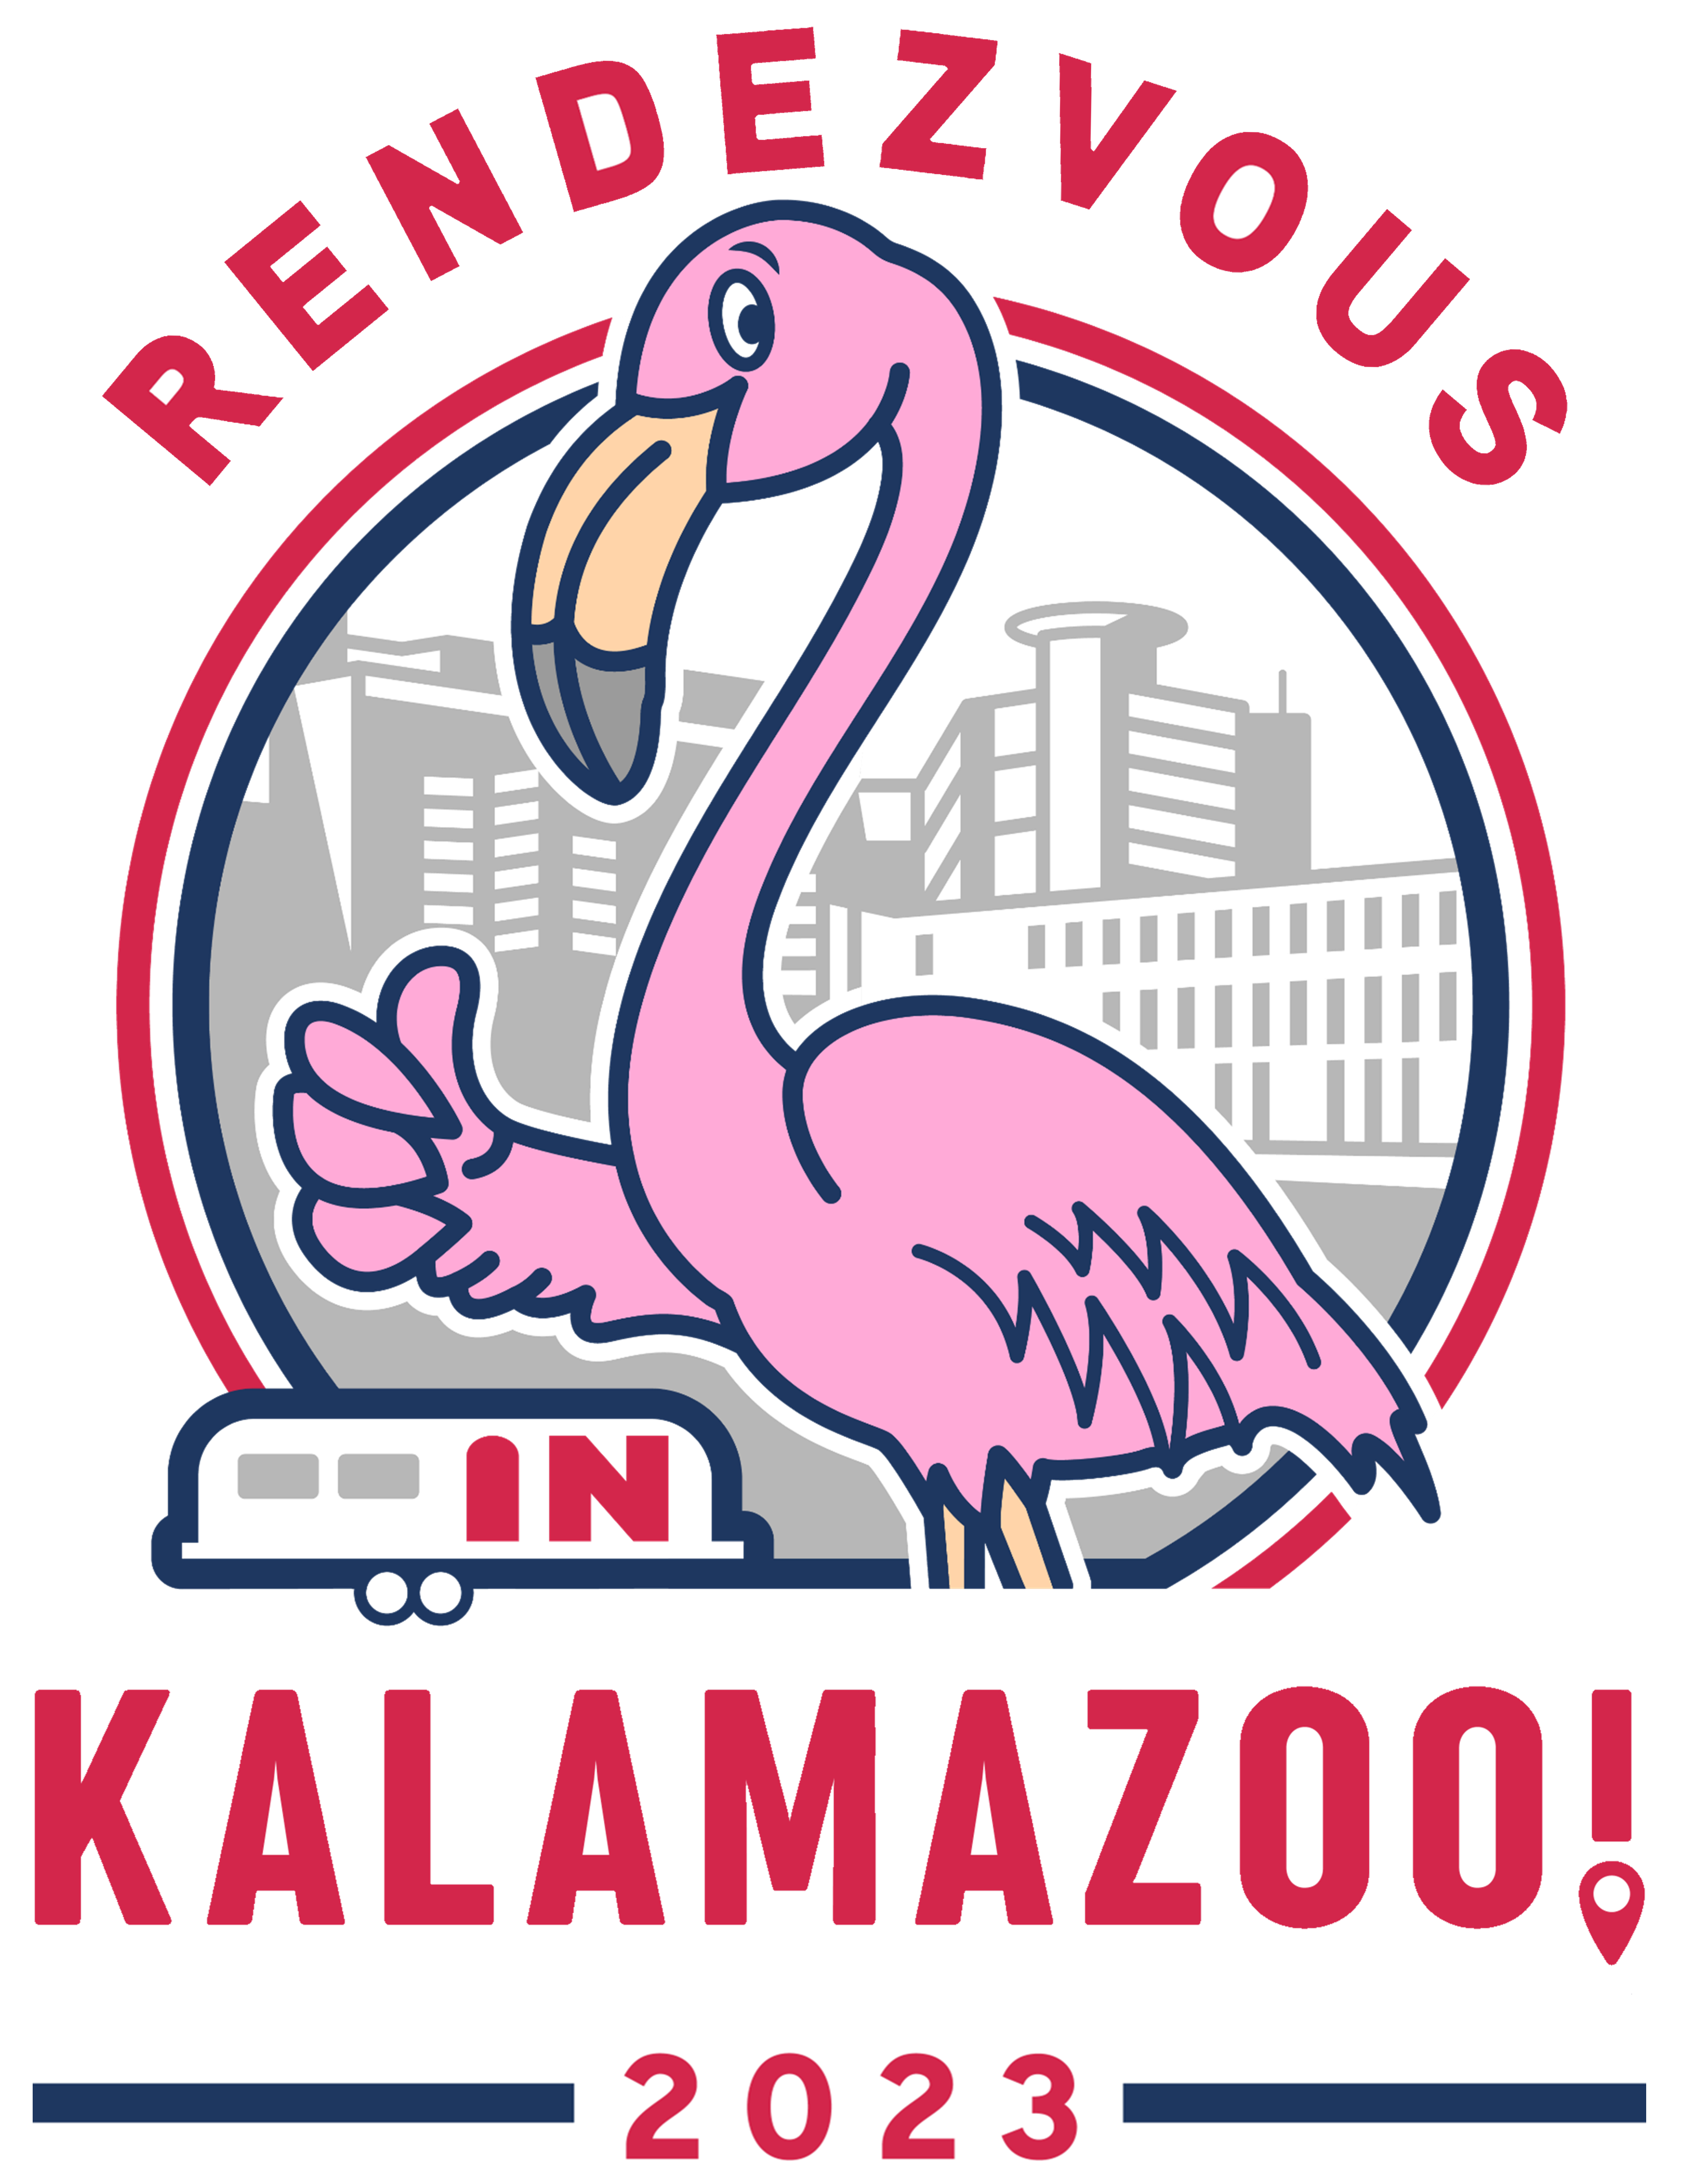 Rendezvous in Kalamazoo!